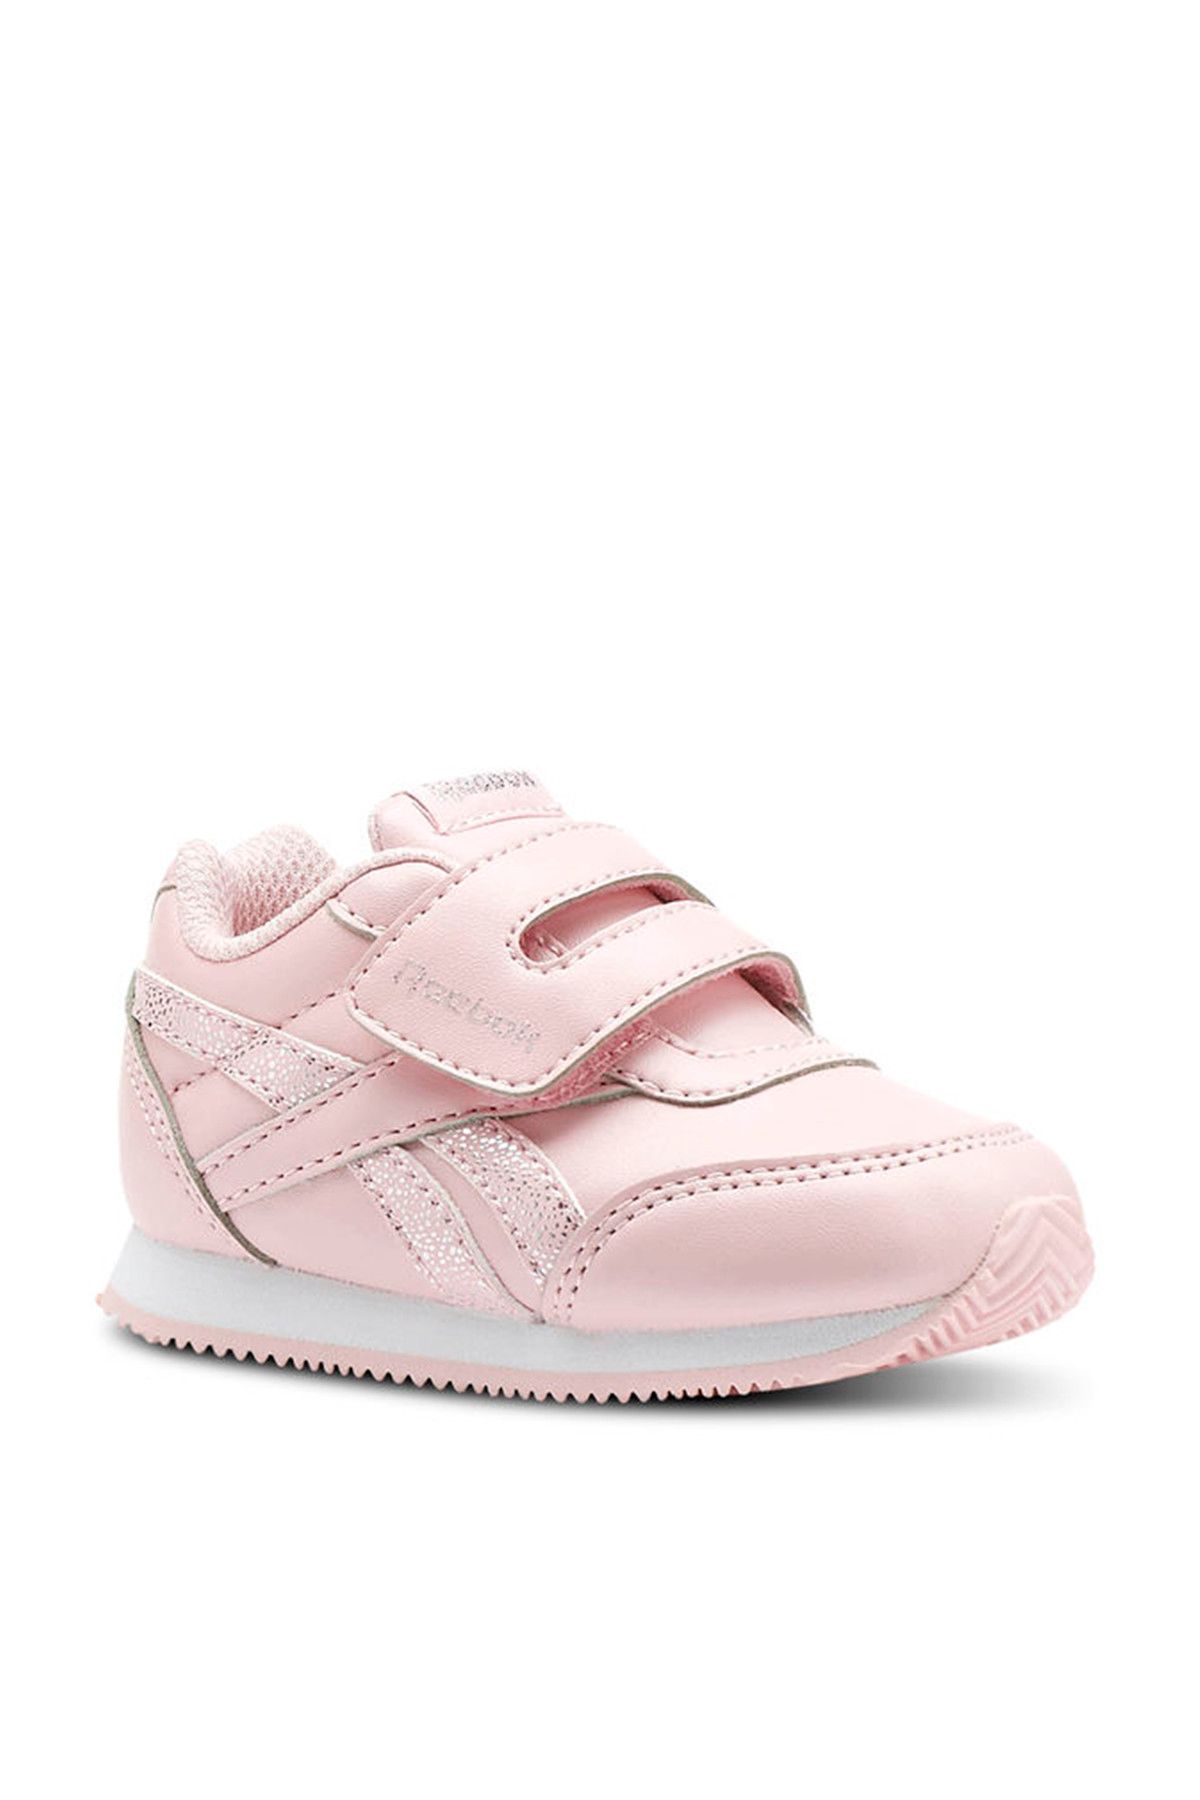 Reebok Pembe Kız Bebek Ayakkabı ROYAL CLJOG 2 KC